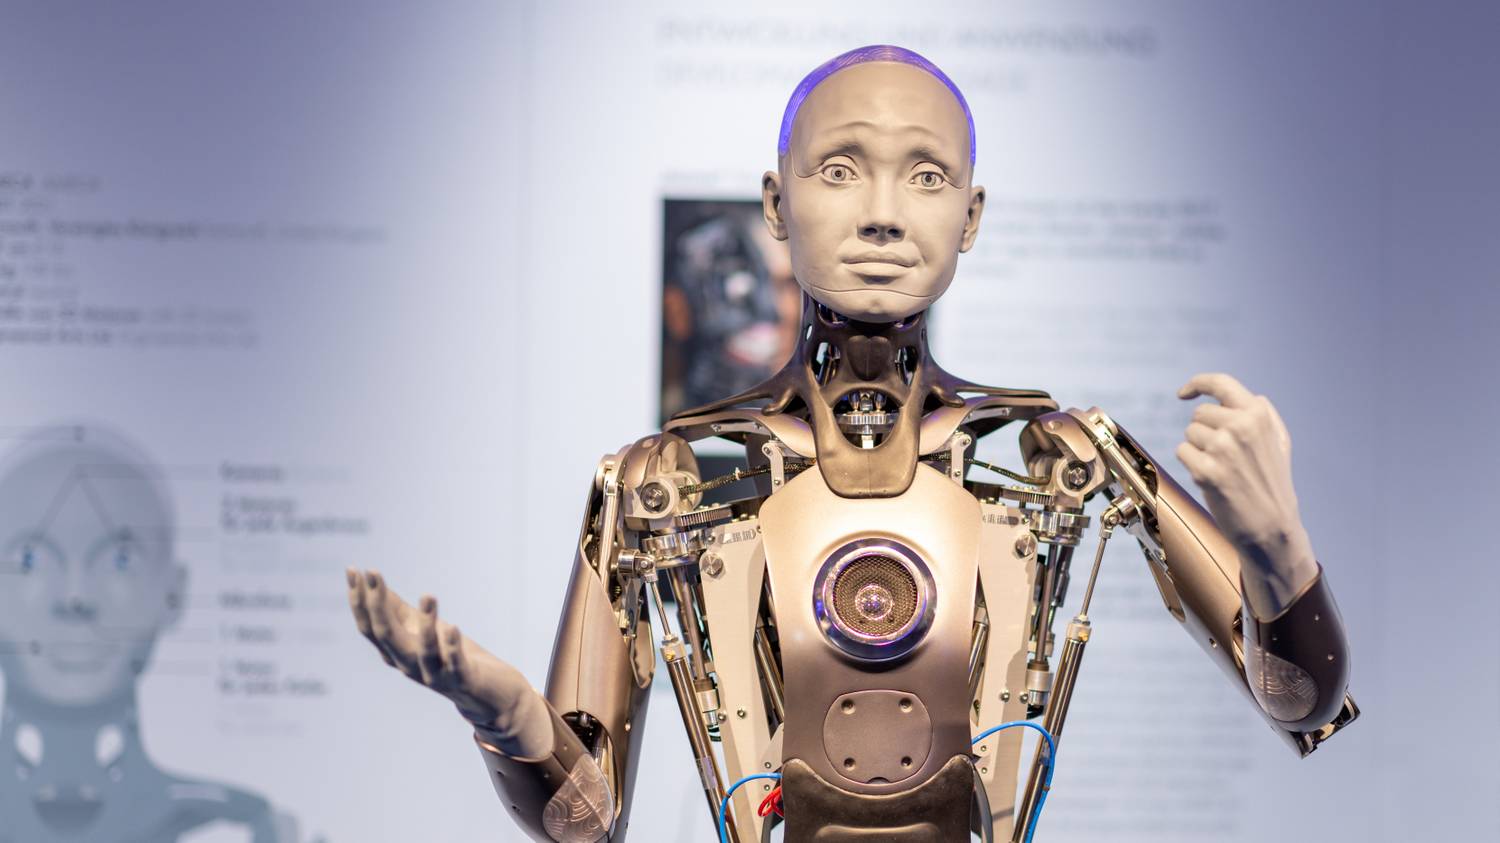 A legfejlettebb robotot faggatták Istenről, válasza mindenkinek meglepetést okozott